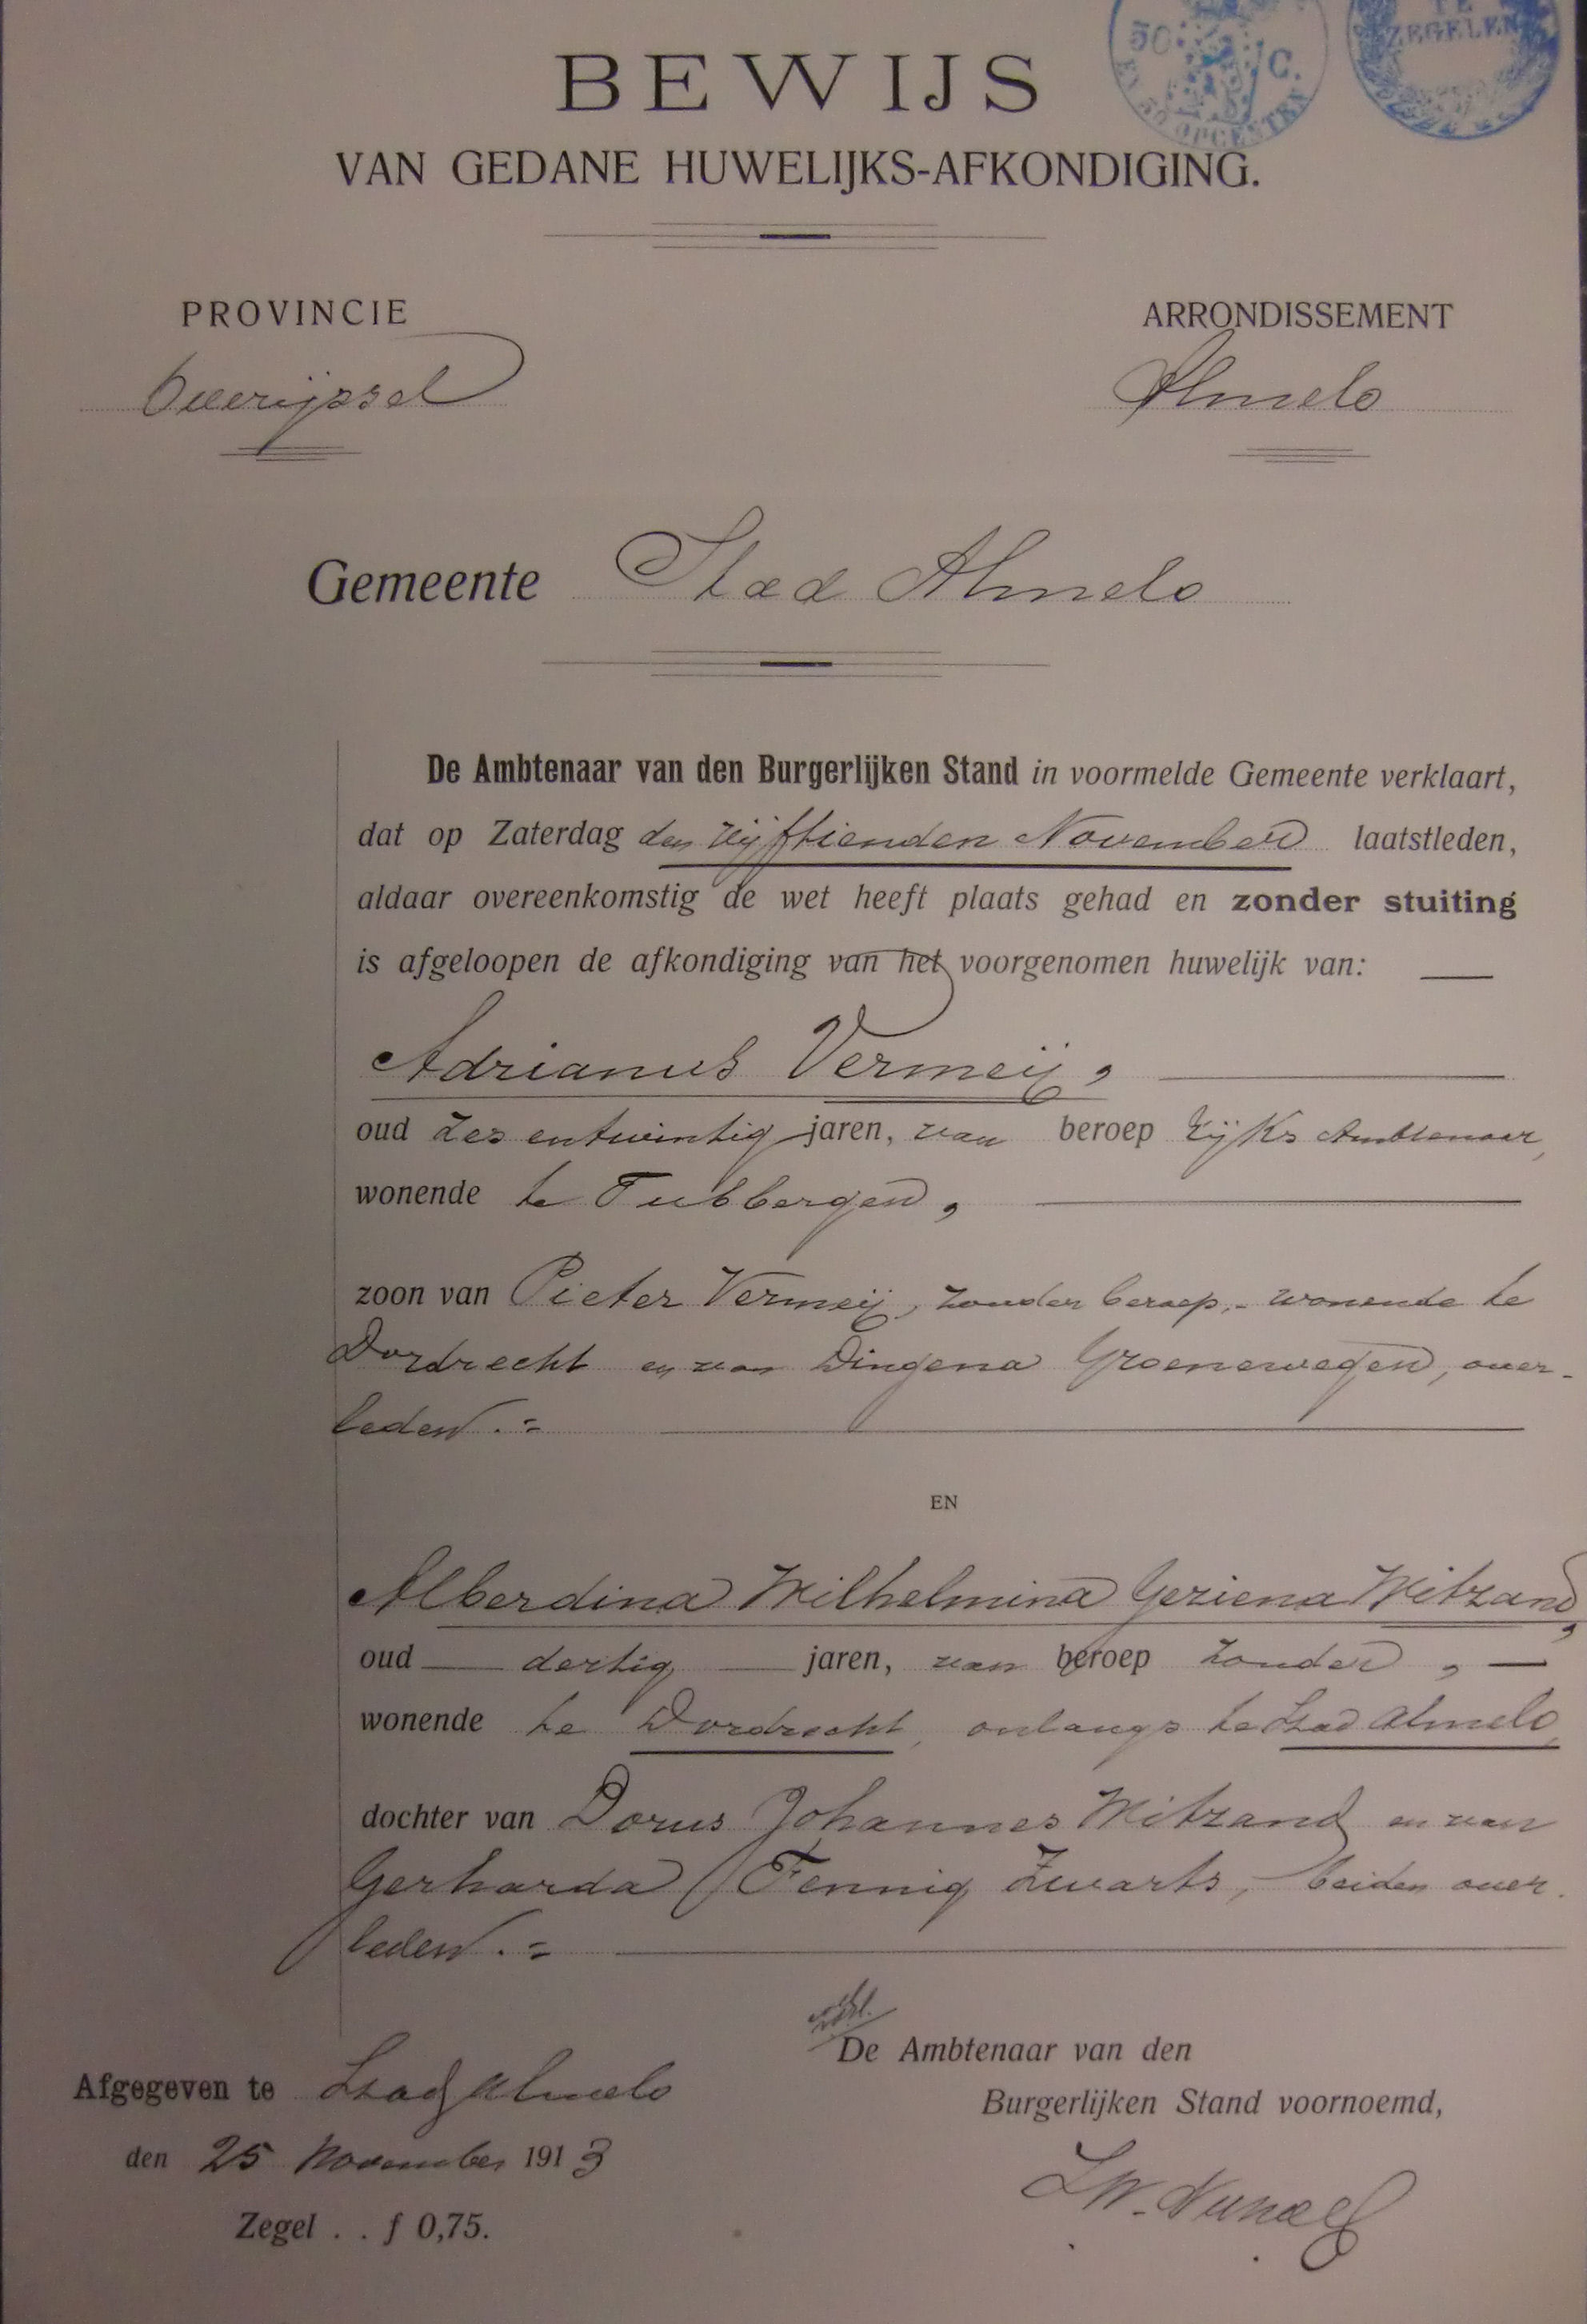 huwelijks afkondiging Adrianus Vermeij 1887